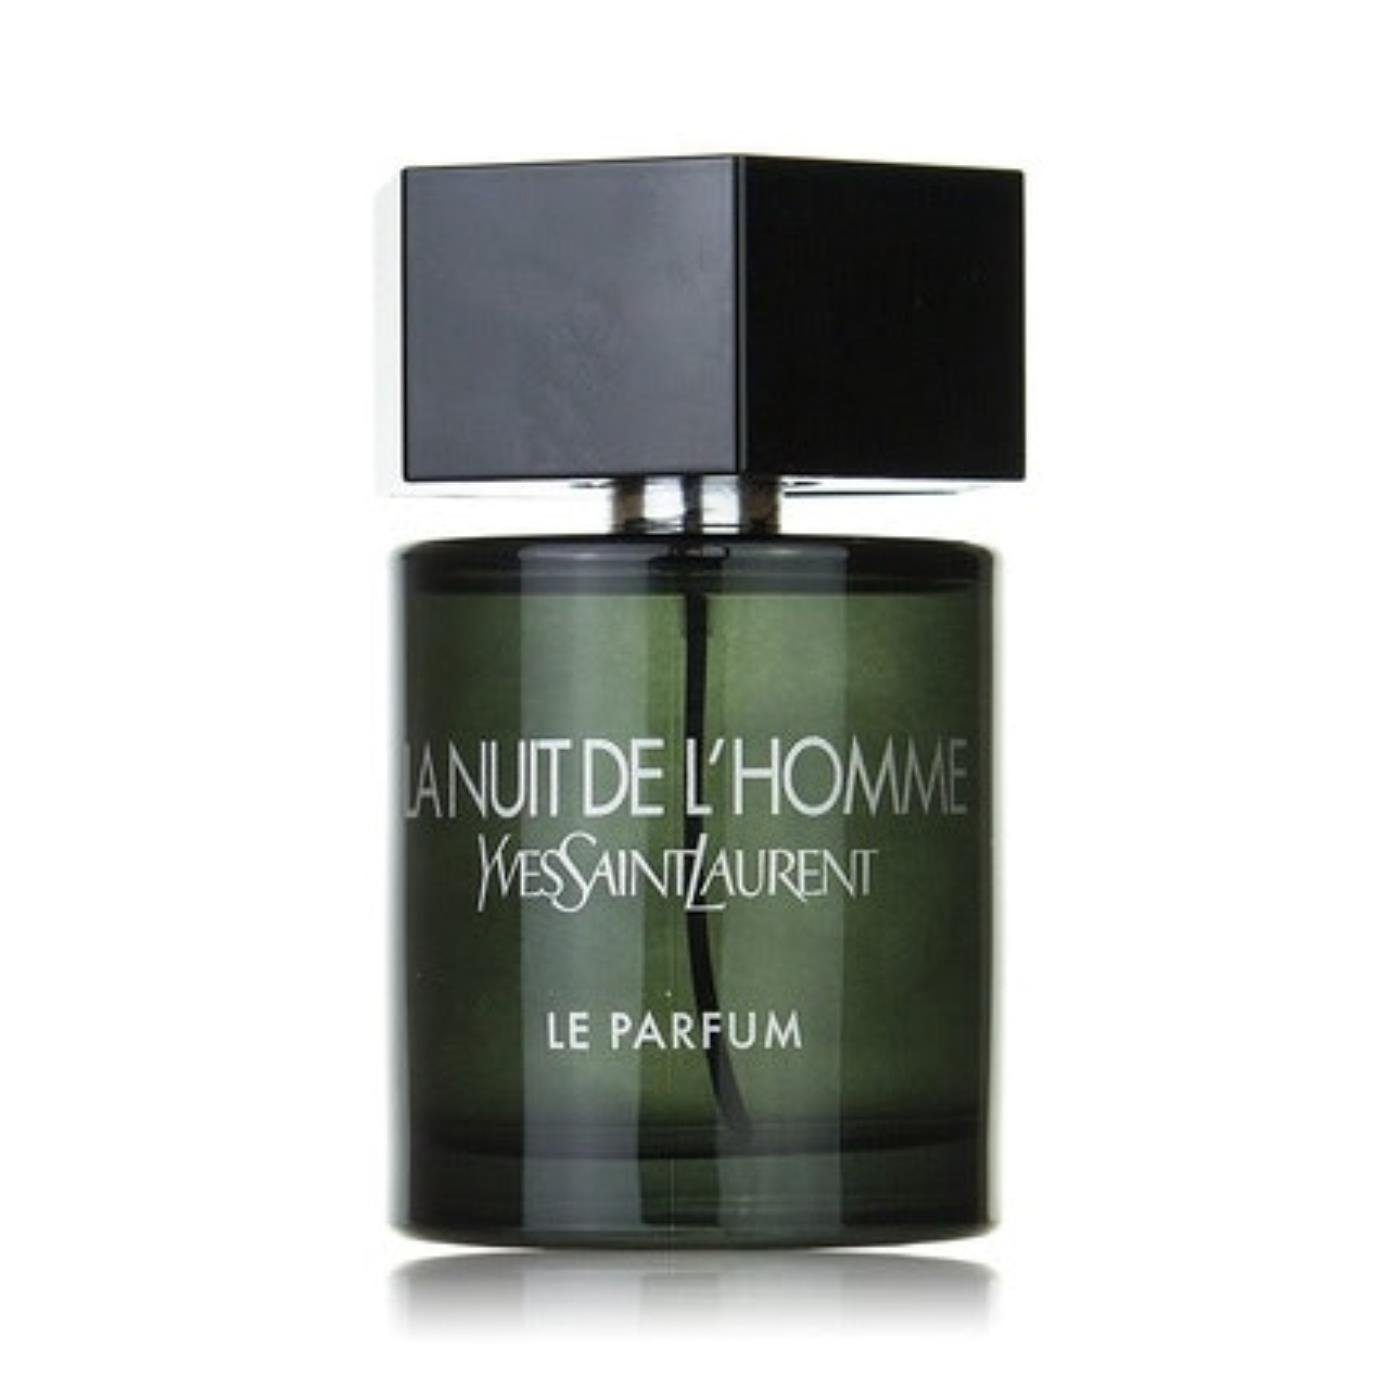 YVES SAINT Eau LAURENT Saint L'Homme de de Nuit Yves Parfum Le Laurent Parfum La